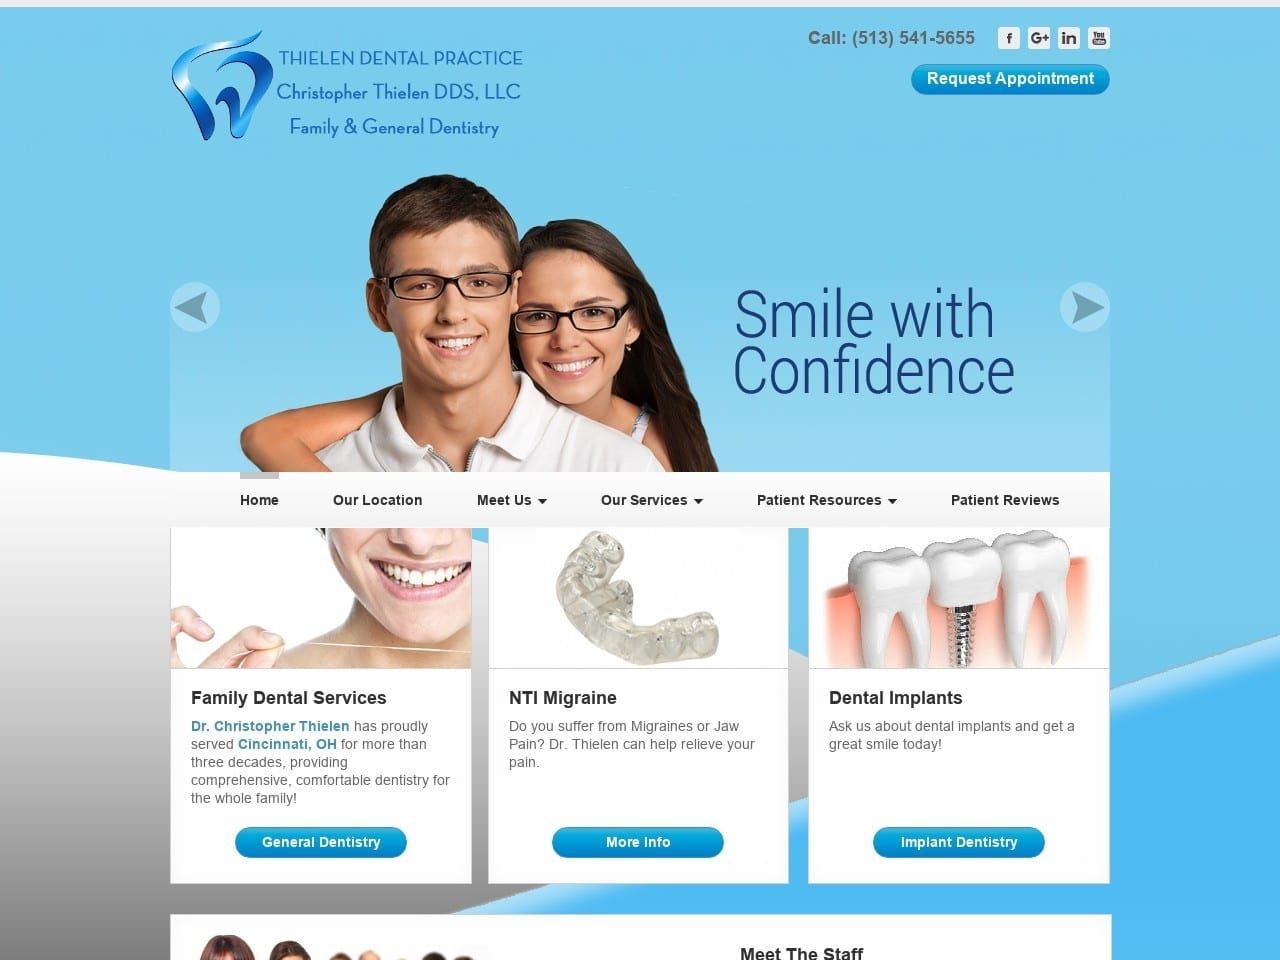 Thielen Dental Practice Website Screenshot from cincydental.com